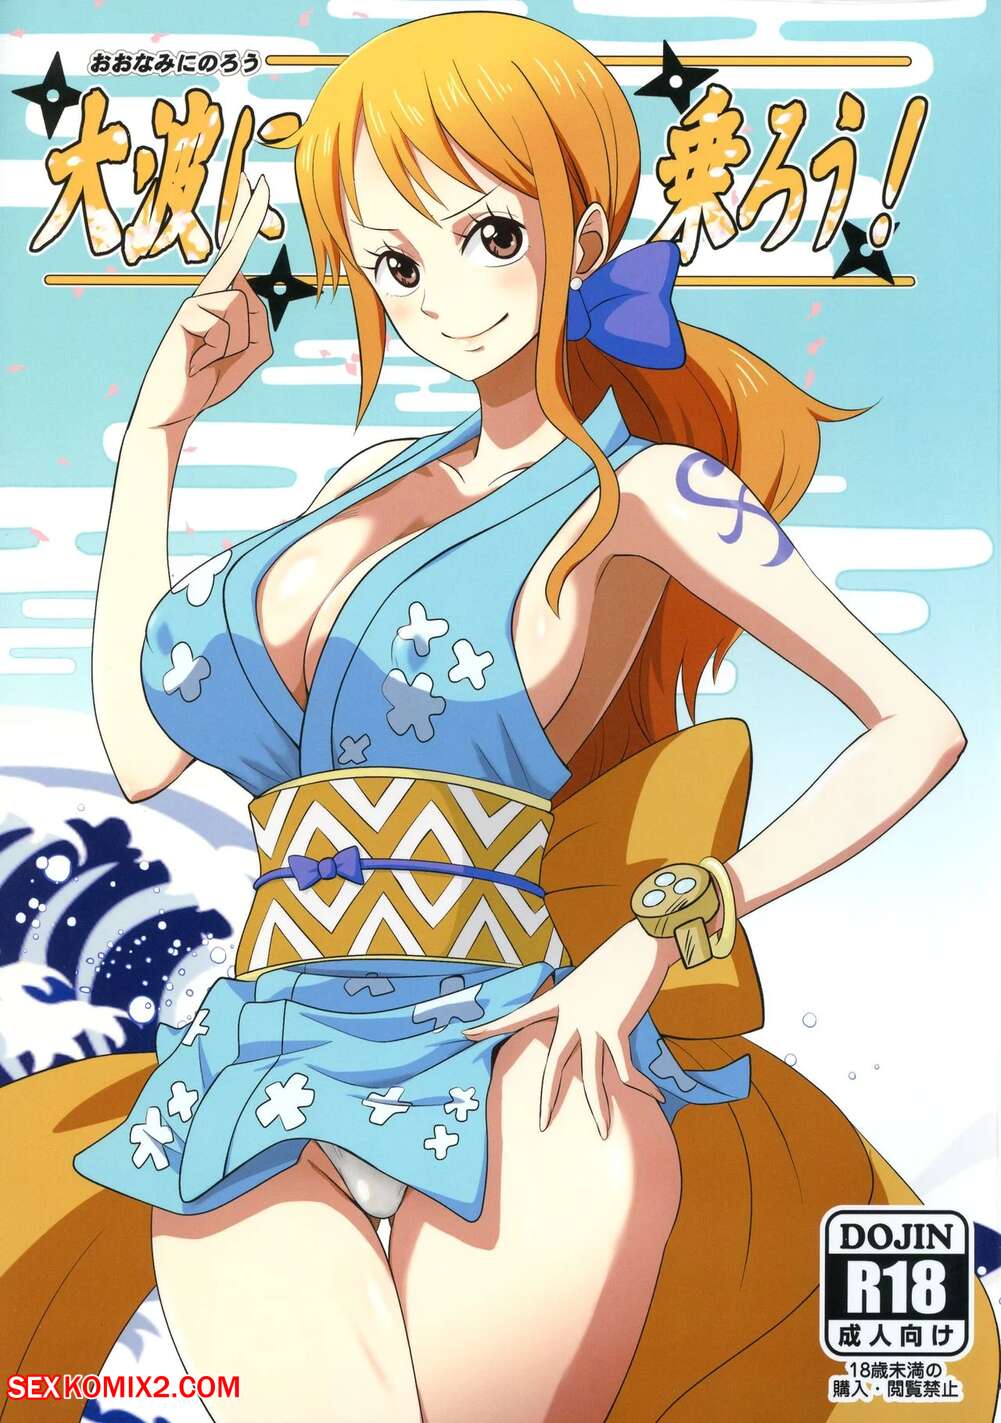 Cartoons Anime One Piece - âœ…ï¸ Porn comic Oonami ni Norou. ONE PIECE Sex comic busty beauty blonde |  Porn comics in English for adults only | sexkomix2.com